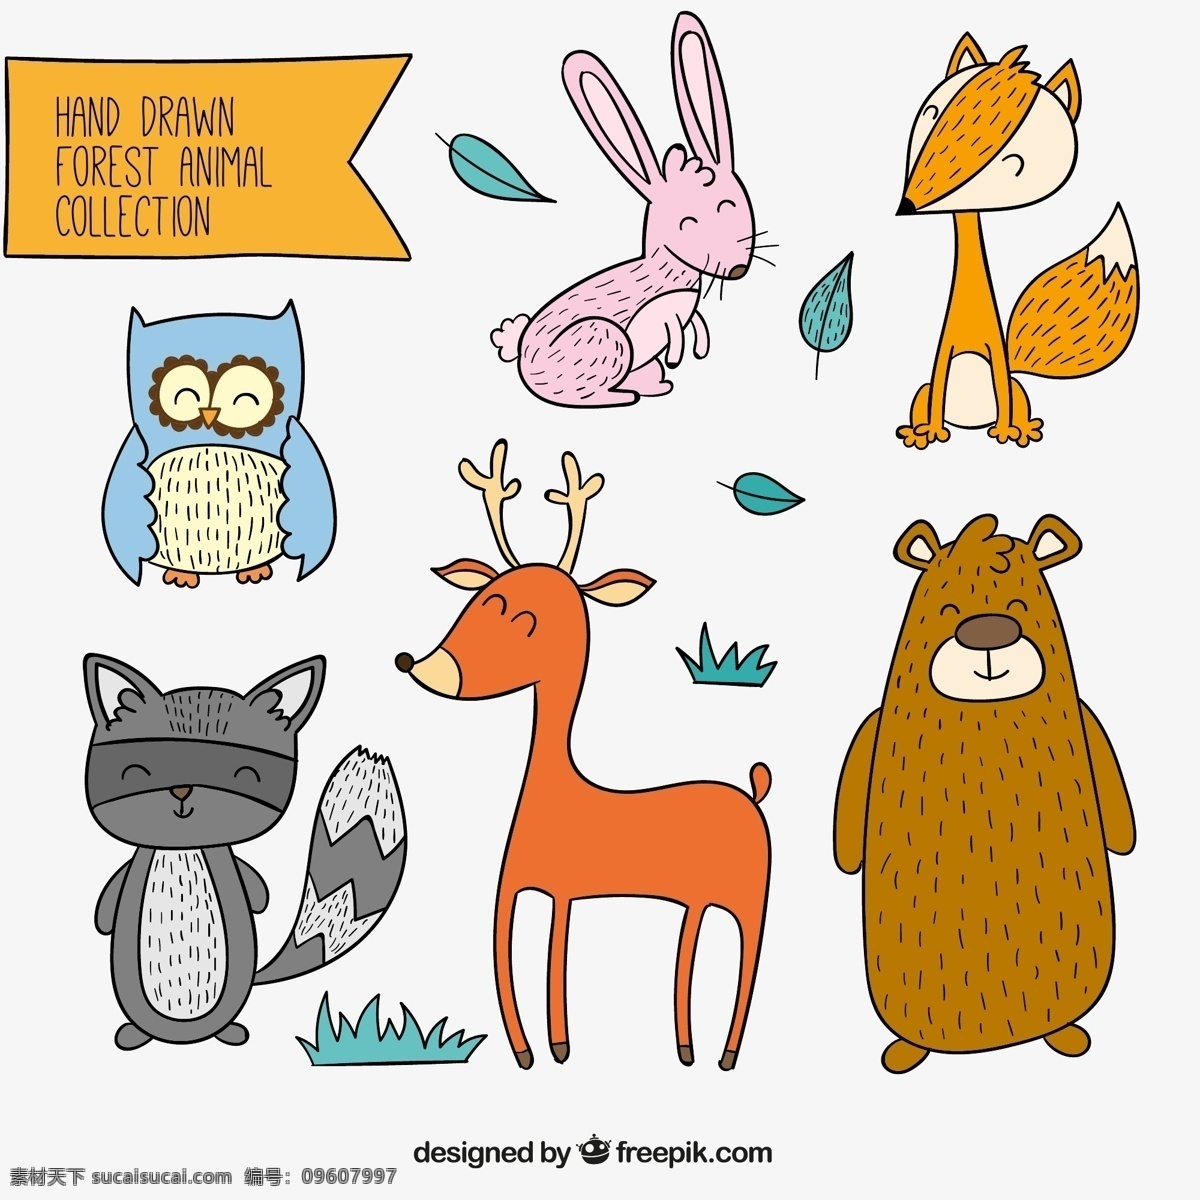 款 彩绘 笑脸 森林 动物 矢量 手绘 可爱 卡通 猫头鹰 兔子 狐狸 棕熊